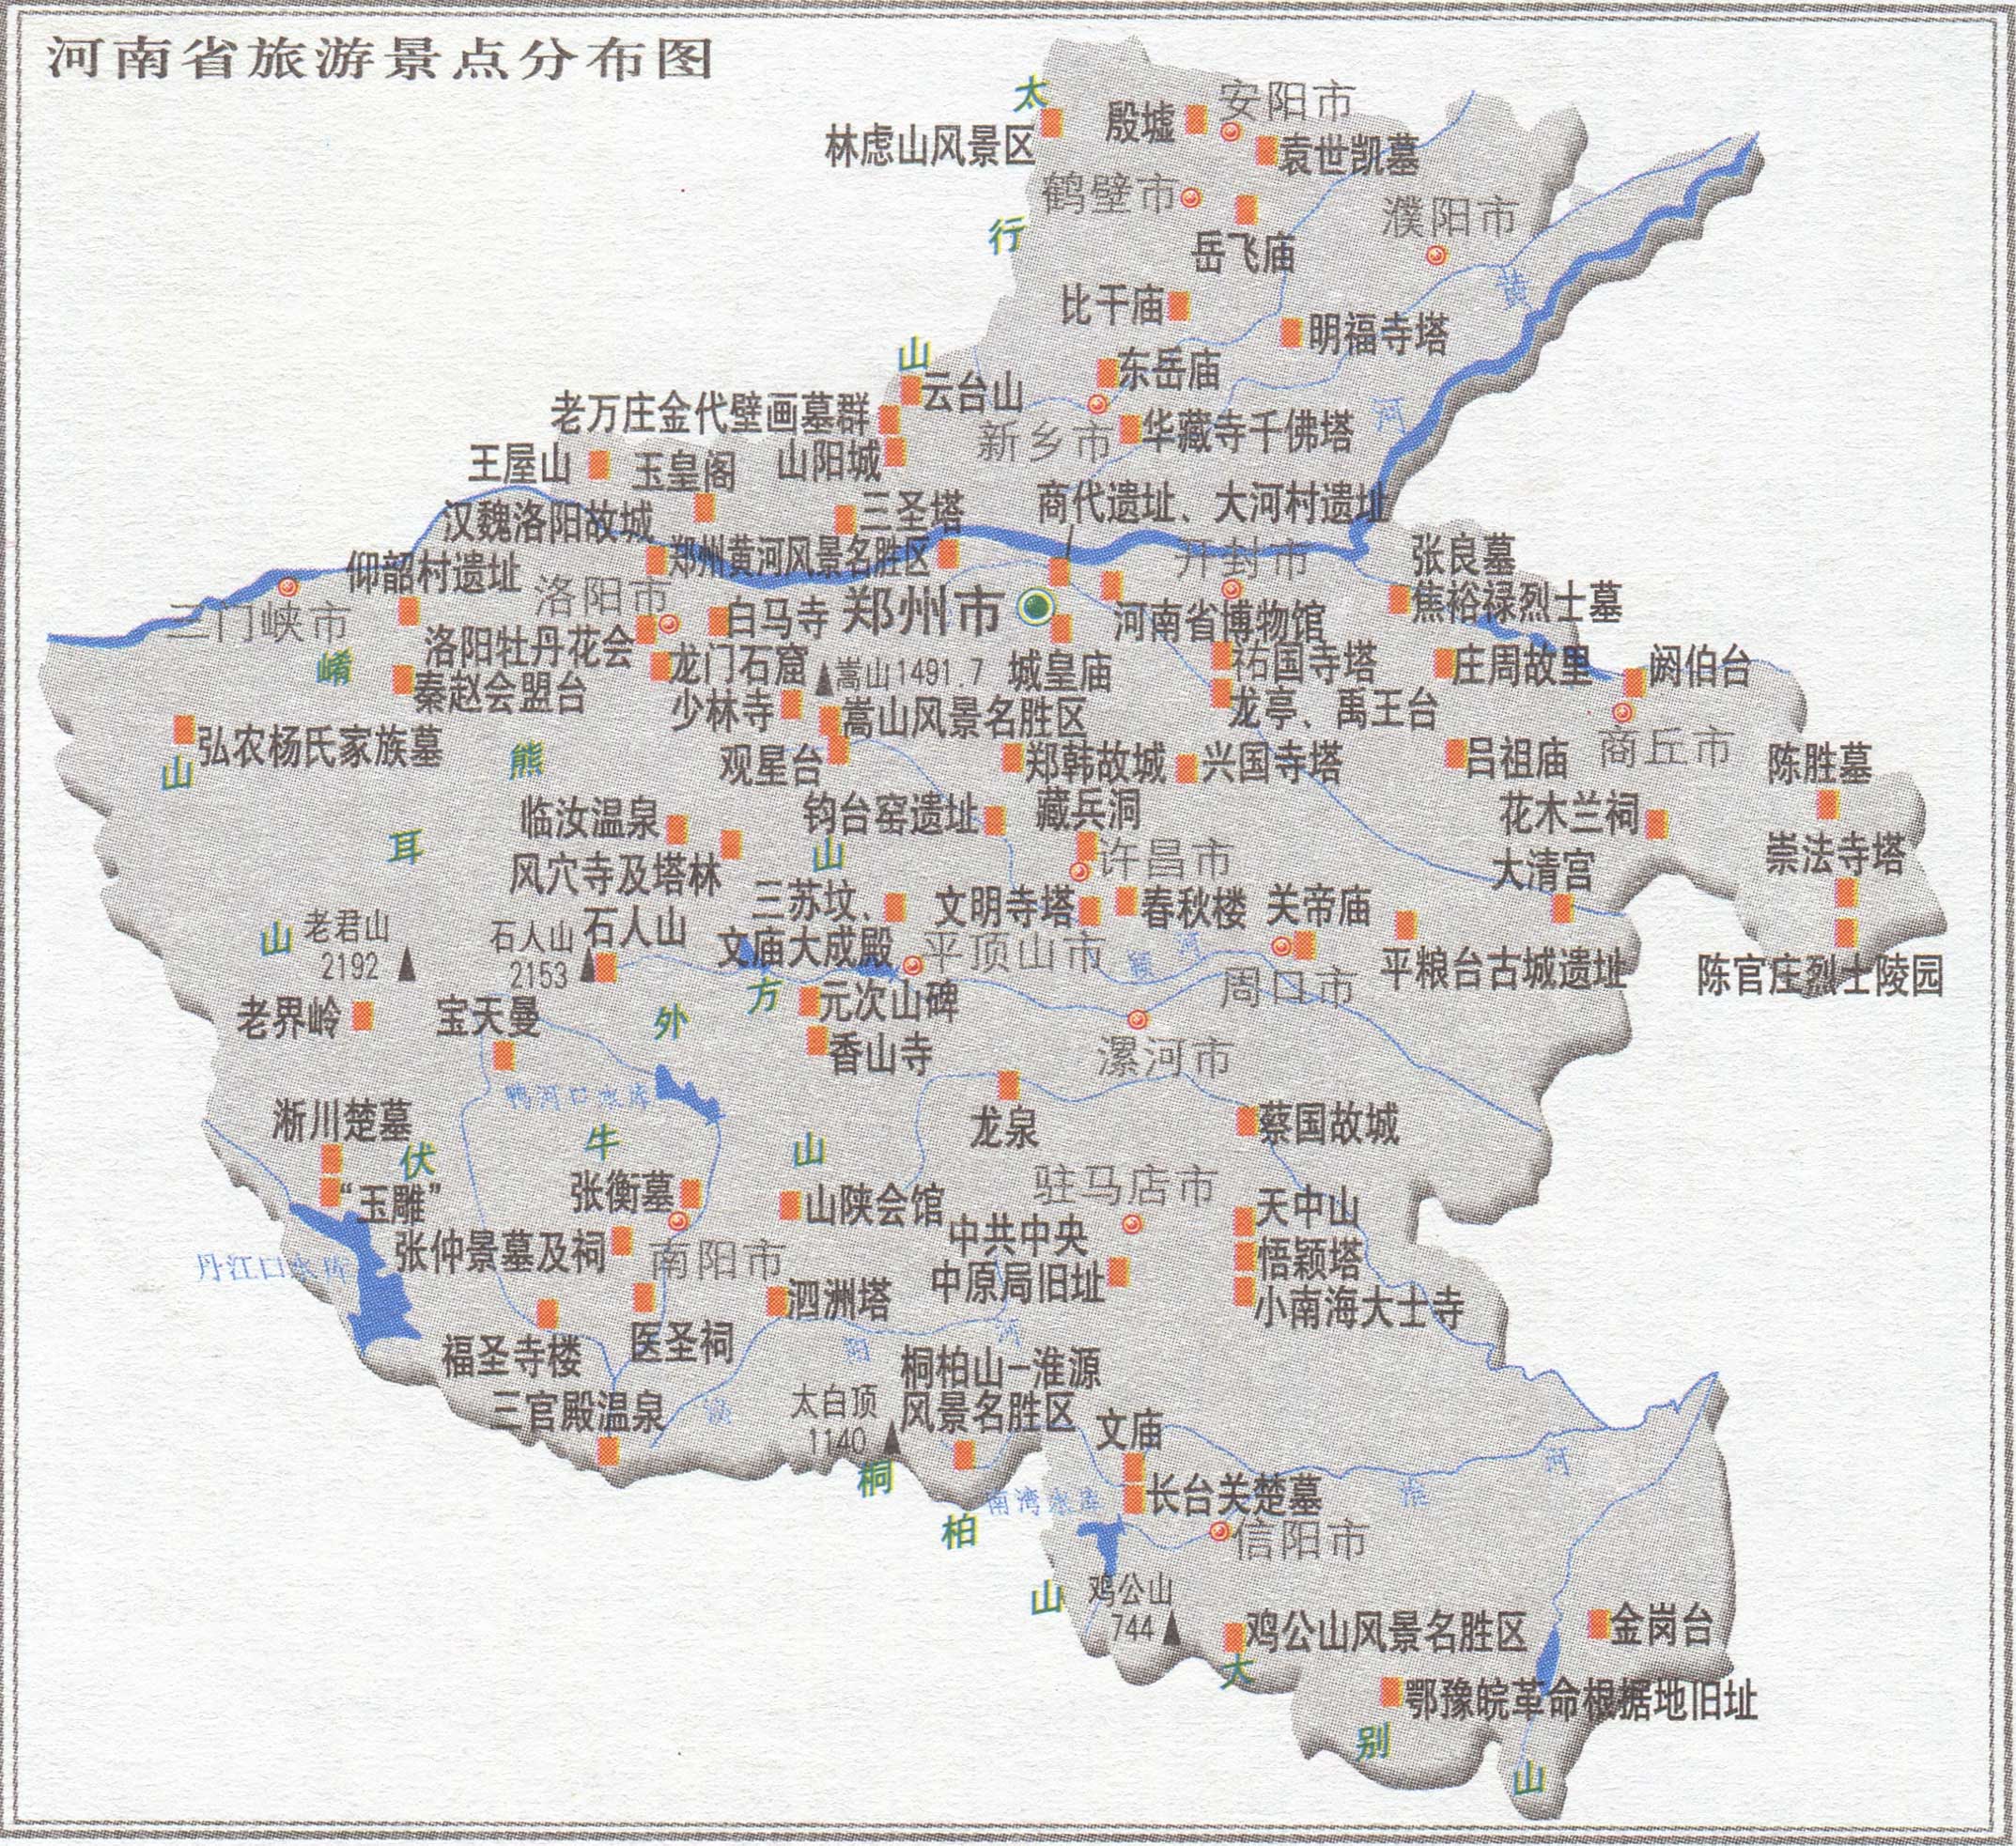 河南旅游景点分布图_景点分布图地图库_地图窝图片